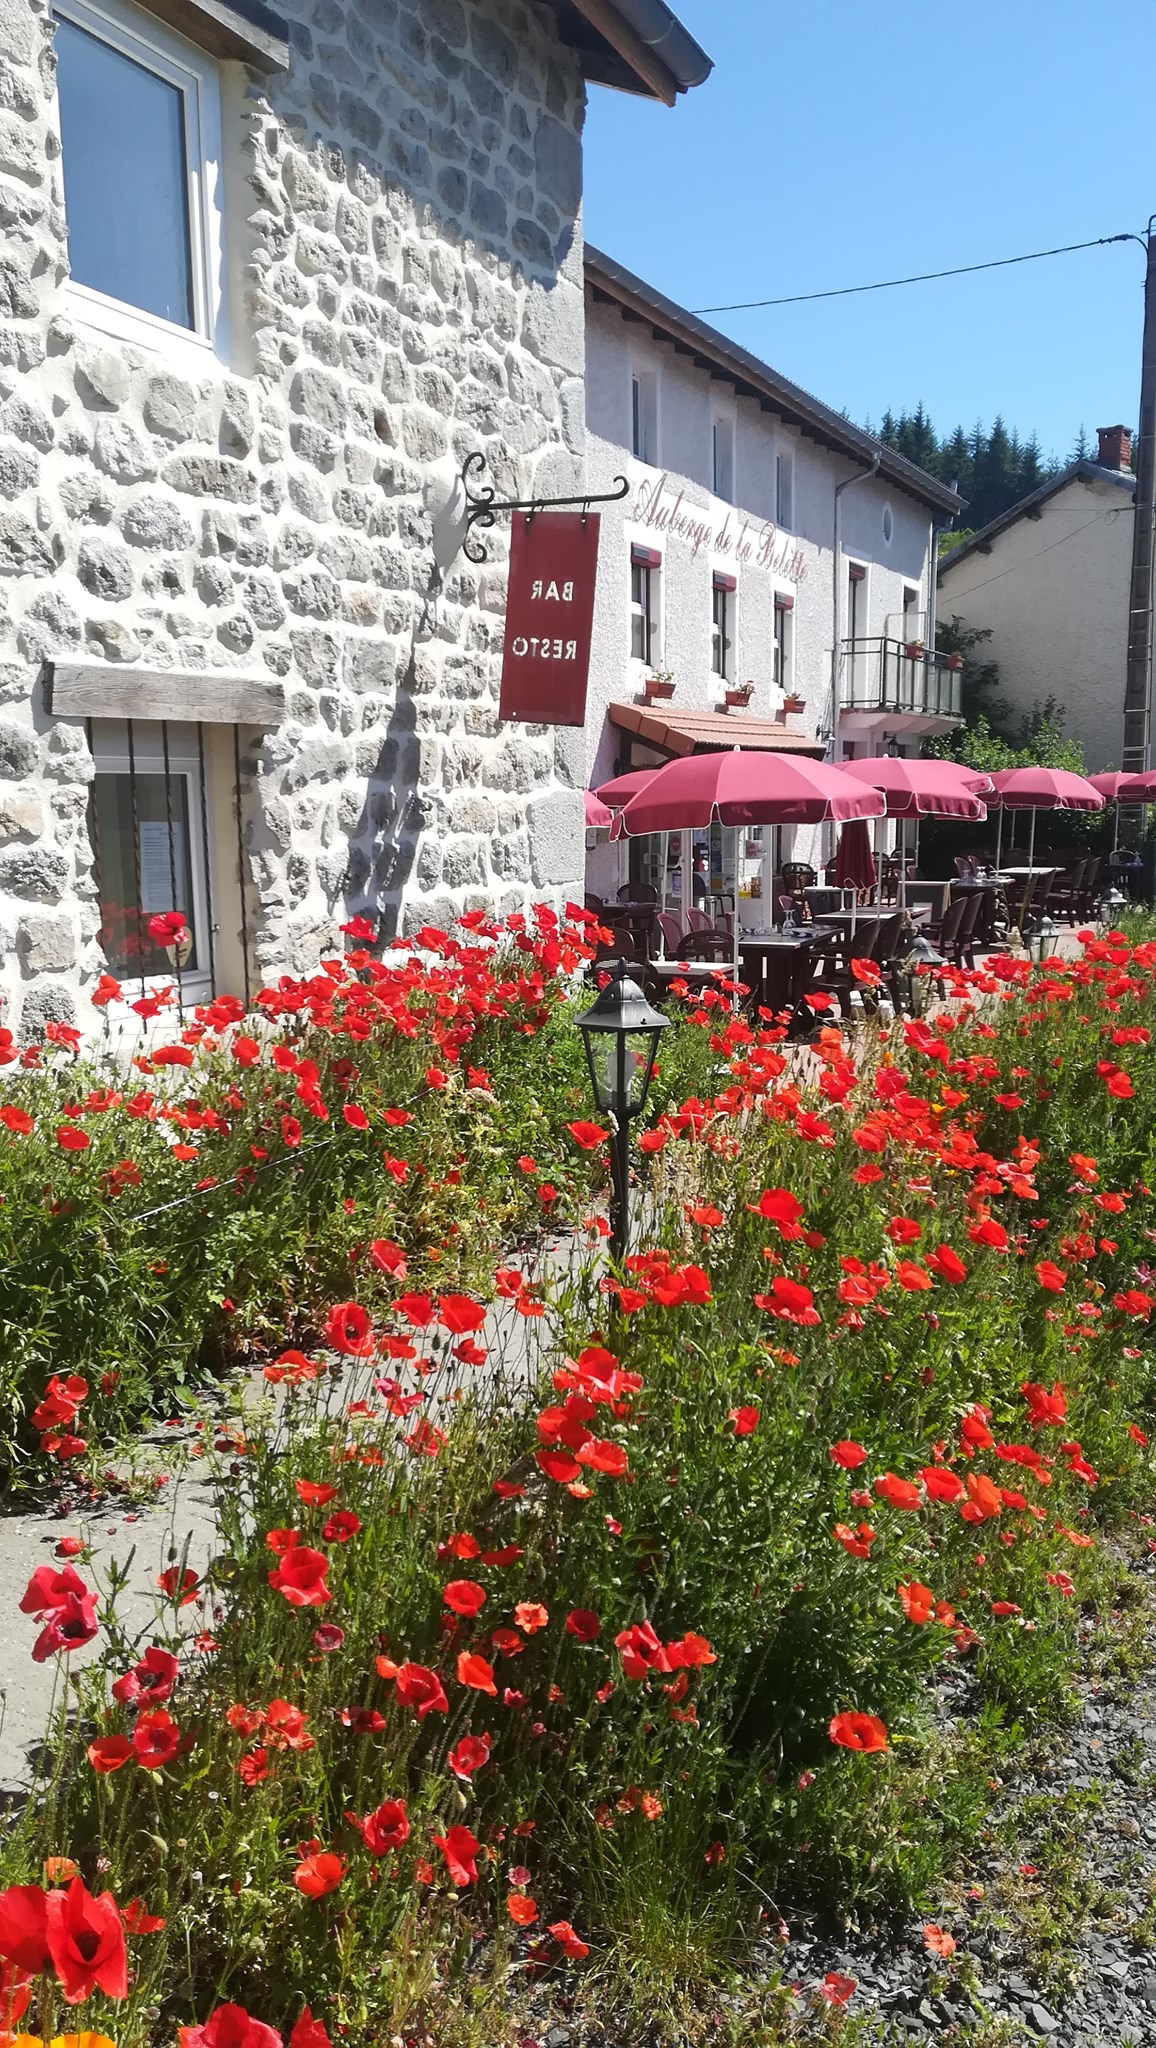 L’Auberge de La Belette est un hôtel restaurant bar de caractère, 2*, labellisé Qualité Tourisme, Clef verte et Tourisme et Handicap… Une « pépite » à haut potentiel à proximité de la sous-préfecture d’Ambert au cœur du Parc Naturel Régional du Livradois Forez ! (50mn de Clermont-Ferrand, 2h de Lyon, 5h de Paris).

Nichée au cœur de l'Auvergne, dans le parc naturel du Livradois Forez, l'auberge de la Belette est un établissement offrant une expérience authentique, avec pour ambition d'apporter des moments de convivialité à sa clientèle dans un cadre rustique.

Non loin de la ville d'Ambert, vous aurez l'occasion de séjourner dans cet établissement au décor de montagne, en pleine immersion dans la vie Auvergnate. L'établissement bénéficie d'une situation idéale, au départ de nombreux sentiers pédestres et au cœur du plus grand domaine VTT de France (2700 km).

La partie restauration est constituée de 3 espaces indépendants d’environ 48 couverts chacun :
•	une salle rustique avec poêle
•	une salle avec cheminée (insert)
•	une terrasse avec vue

La cuisine est communicante avec les 3 espaces, entièrement aménagée et équipée aux normes en vigueur (piano, four, frigo, congélateur, plonge, chambre froide… Espace préparation chaud, préparation froid, cave...).

La partie hébergement (utilisable sous forme hôtel, chambre d’hôtes ou gîte) comprend 7 chambres, organisées en 17 couchages pour la norme 2* (19 couchages entièrement modulables, neufs et confortables disponibles). Chaque chambre comprend une douche ou baignoire et WC. 2 ou 3 chambres ont une capacité de 3 ou 4 personnes (familiale ou suite).

D’autres espaces valorisent l’établissement pour l’accueil clientèle ou la fonctionnalité du travail : piscine couverte, salle de détente, terrasses privatives, jardin, parking… buanderie, bureau-boutique-réception, réserve, grenier…

L’établissement comprend également un comptoir de bar-réception et une licence IV.

Les toilettes sont neuves et aux normes d’accessibilité. L’hébergement n’est pas accessible aux PMR mais homologué pour les 3 autres handicaps objets de la labellisation (auditif, visuel et mental).

Il y a des vestiaires pour le personnel et un appartement de fonction (90m2, 5 chambres, accès indépendant, proximité village avec école et collège).
 Il y a une clientèle locale fidèle (70%) et saisonnière (nationale et 
internationale). 

L’établissement a entièrement été refait à neuf entre 2016 et 2019 : assainissement individuel, chaudière à granulés, panneaux solaires pour le chauffage et la production électrique, isolation thermique et phonique …

CA de 200 à 350 000 €

Location envisageable

Accompagnement à la reprise

Prix du fonds : 150 000 €, prix des murs : 350 000 €

Disponibilité immédiate

Le Monestier est en zone de revitalisation rurale ce qui permet de bénéficier de dégrèvement d’impôts. Le réseau initiative peut être sollicité pour réaliser un emprunt à taux zéro de 10 000 € maximum en complément d’un emprunt bancaire. Il est possible aussi de solliciter France Active pour obtenir une garantie d’emprunt.